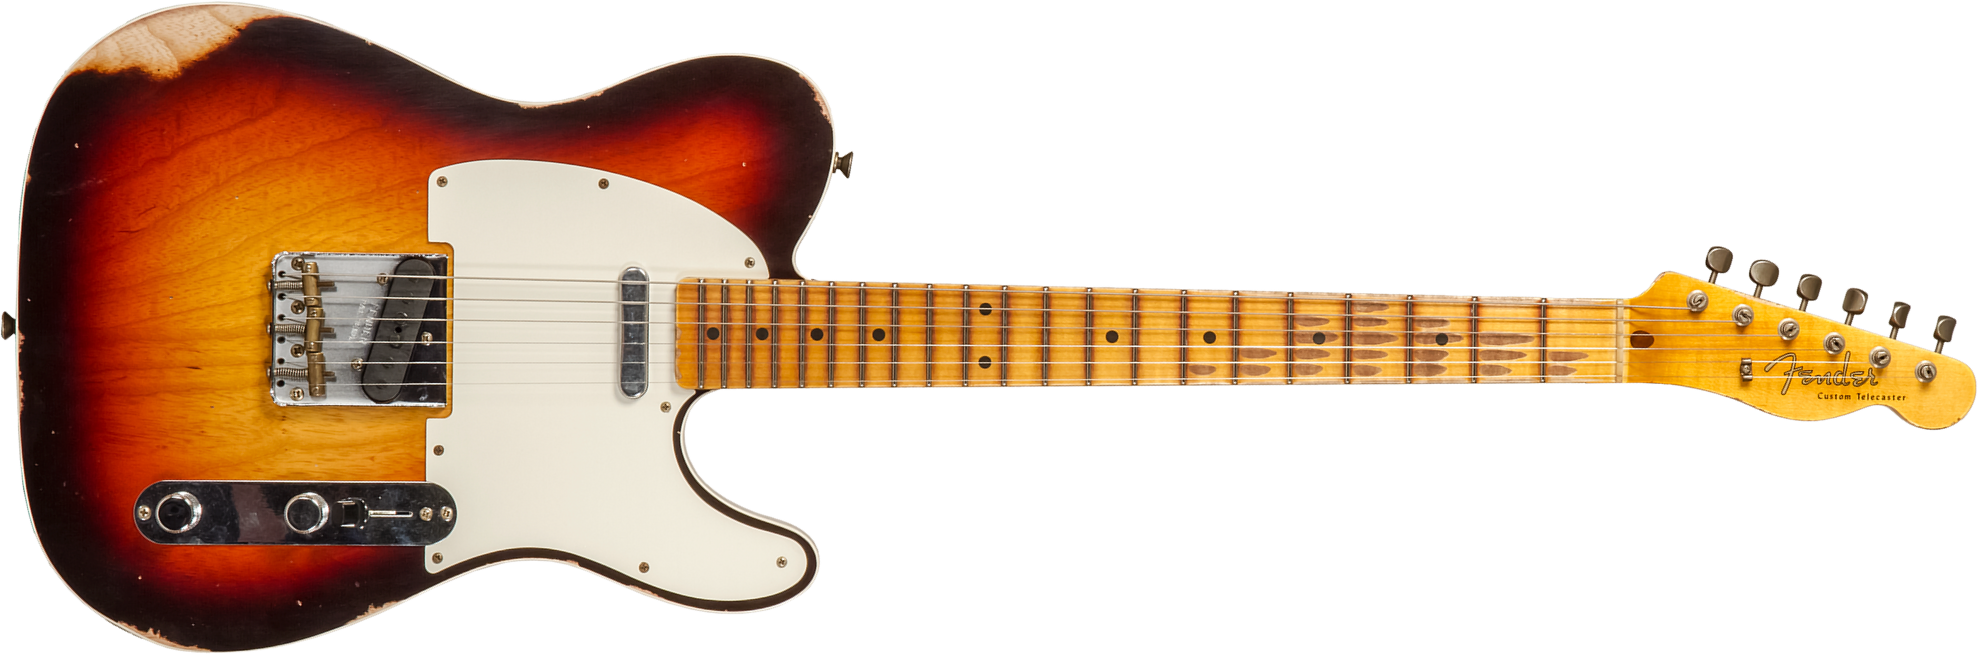 Fender Custom Shop Tele Custom 1959 2s Ht Mn #cz573750 - Relic Chocolate 3-color Sunburst - Guitarra eléctrica con forma de tel - Main picture